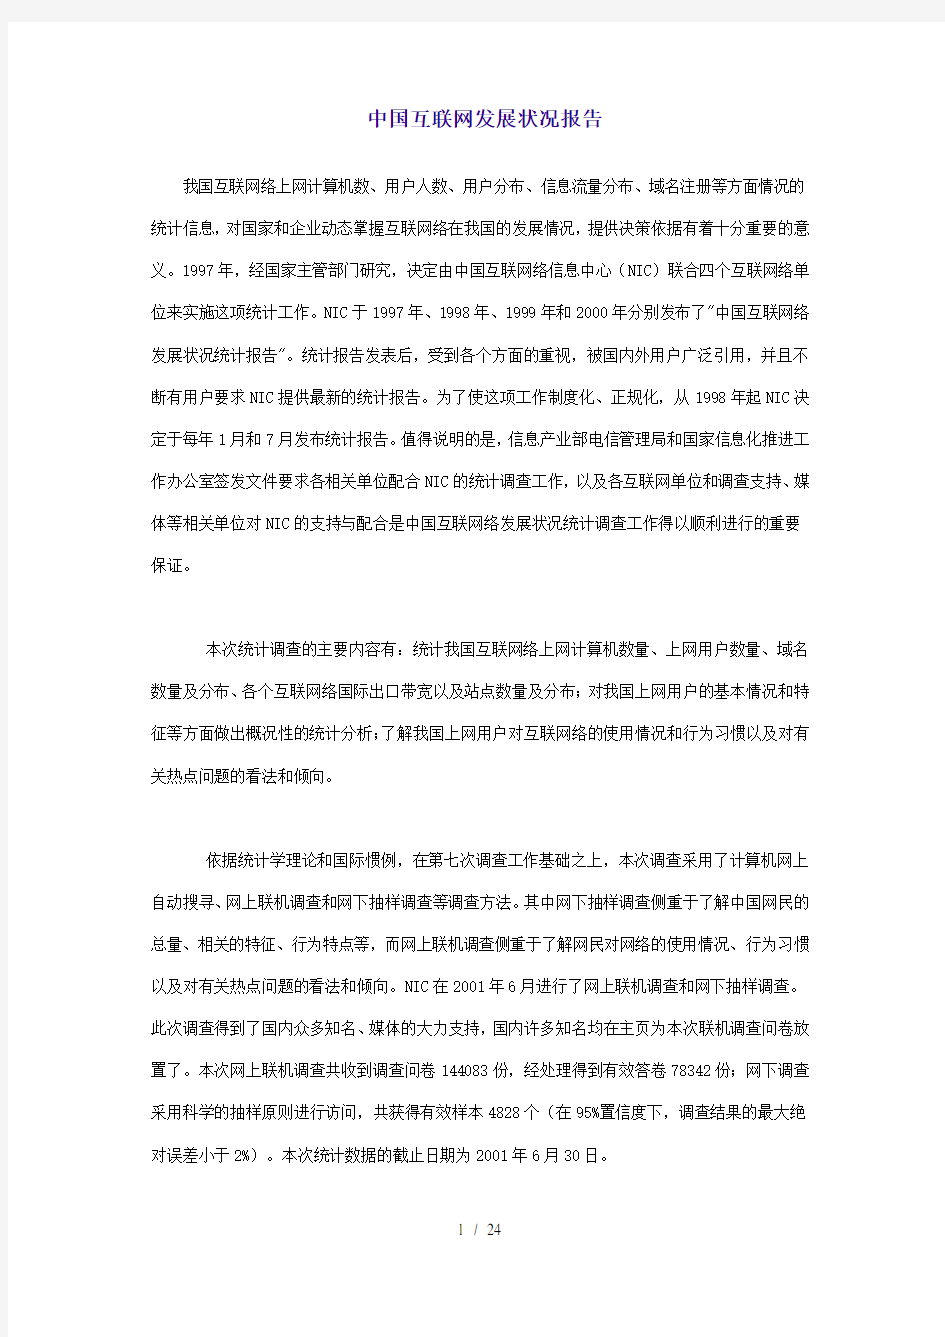 中国互联网发展状况报告(1)